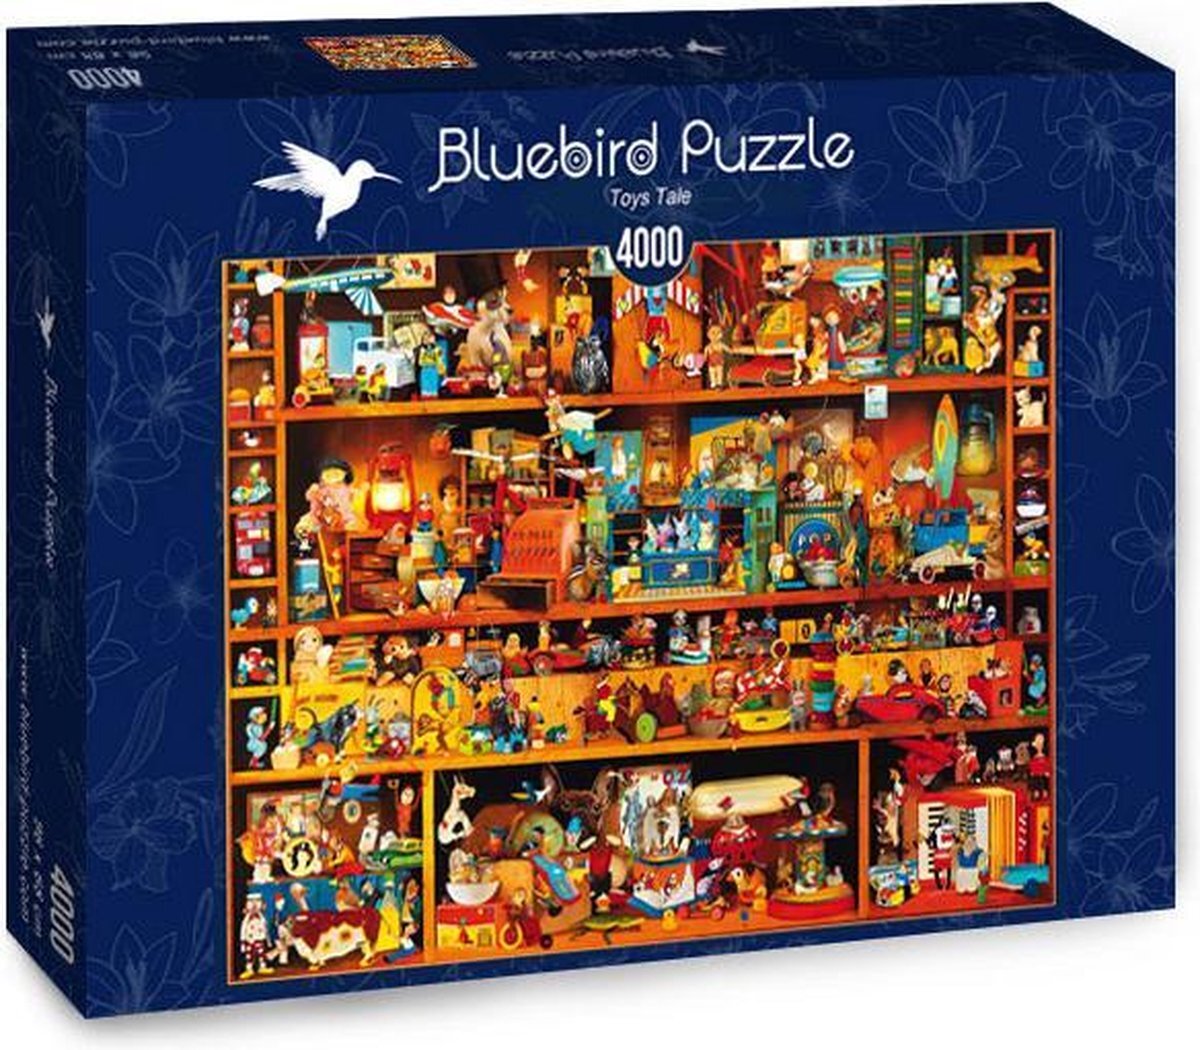 Bluebird Puzzle Toys Tale Bue bird 4000